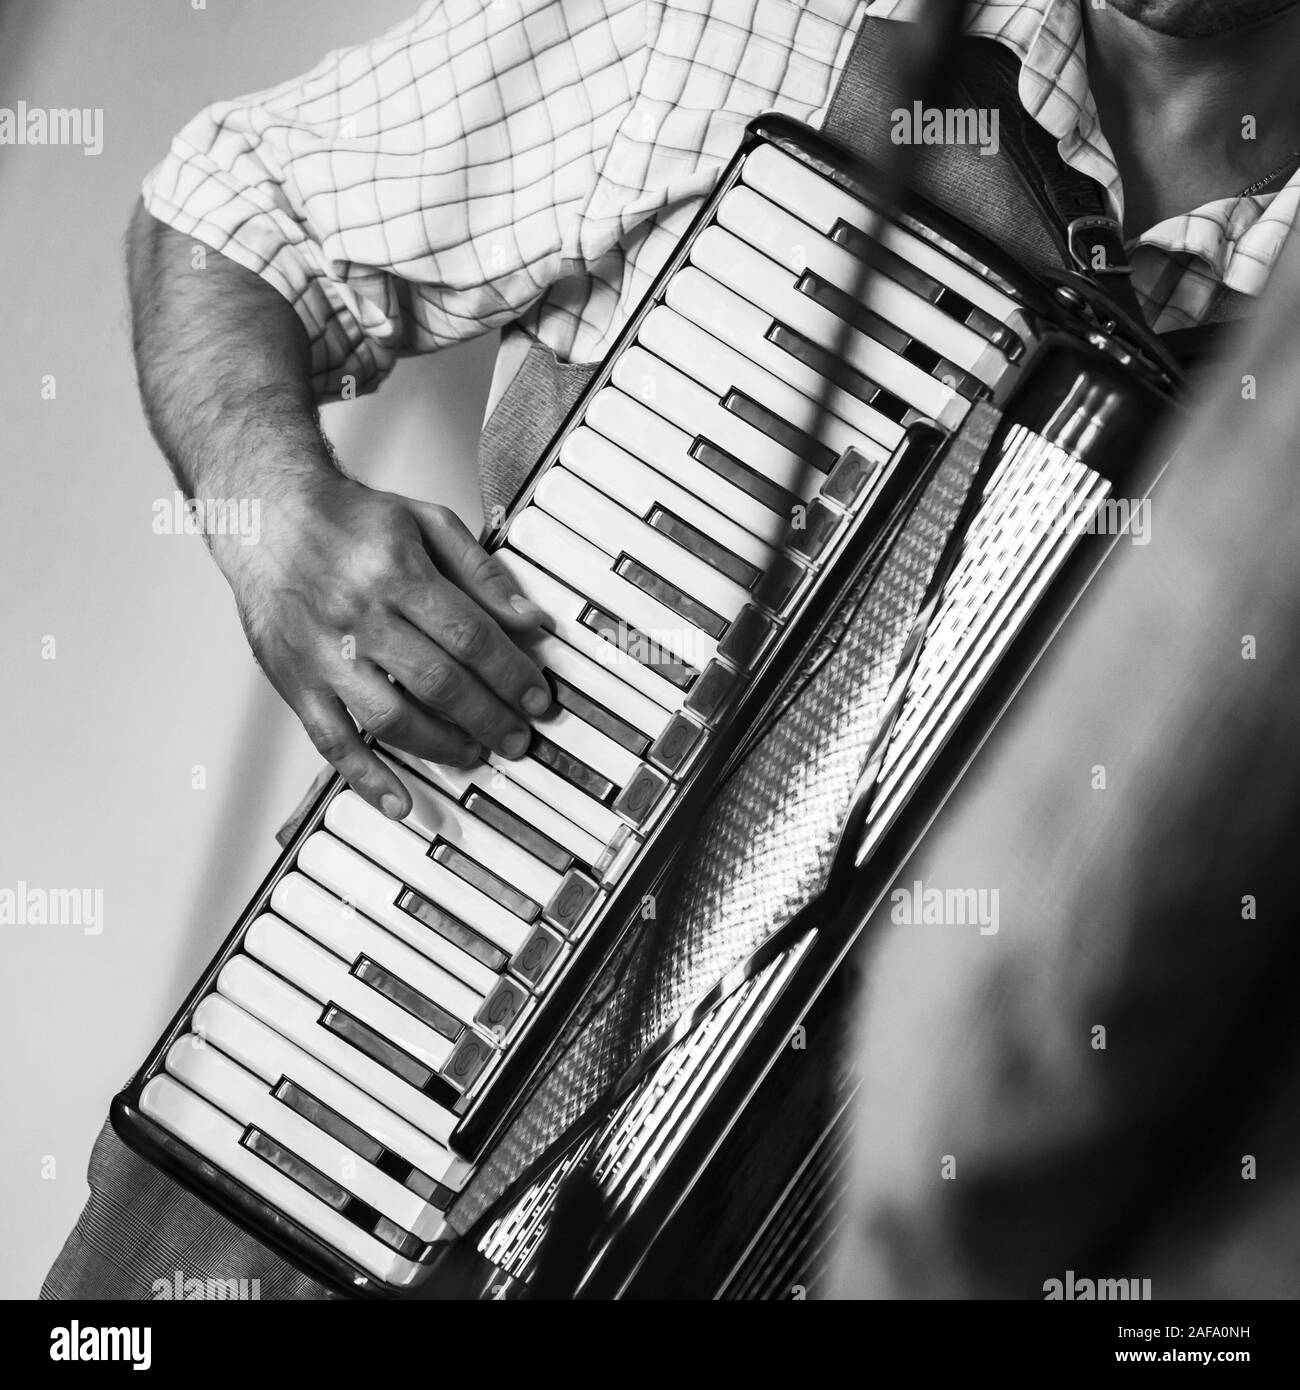 L'accordéoniste joue vintage accordéon. Carré stylisé rétro noir et blanc Banque D'Images